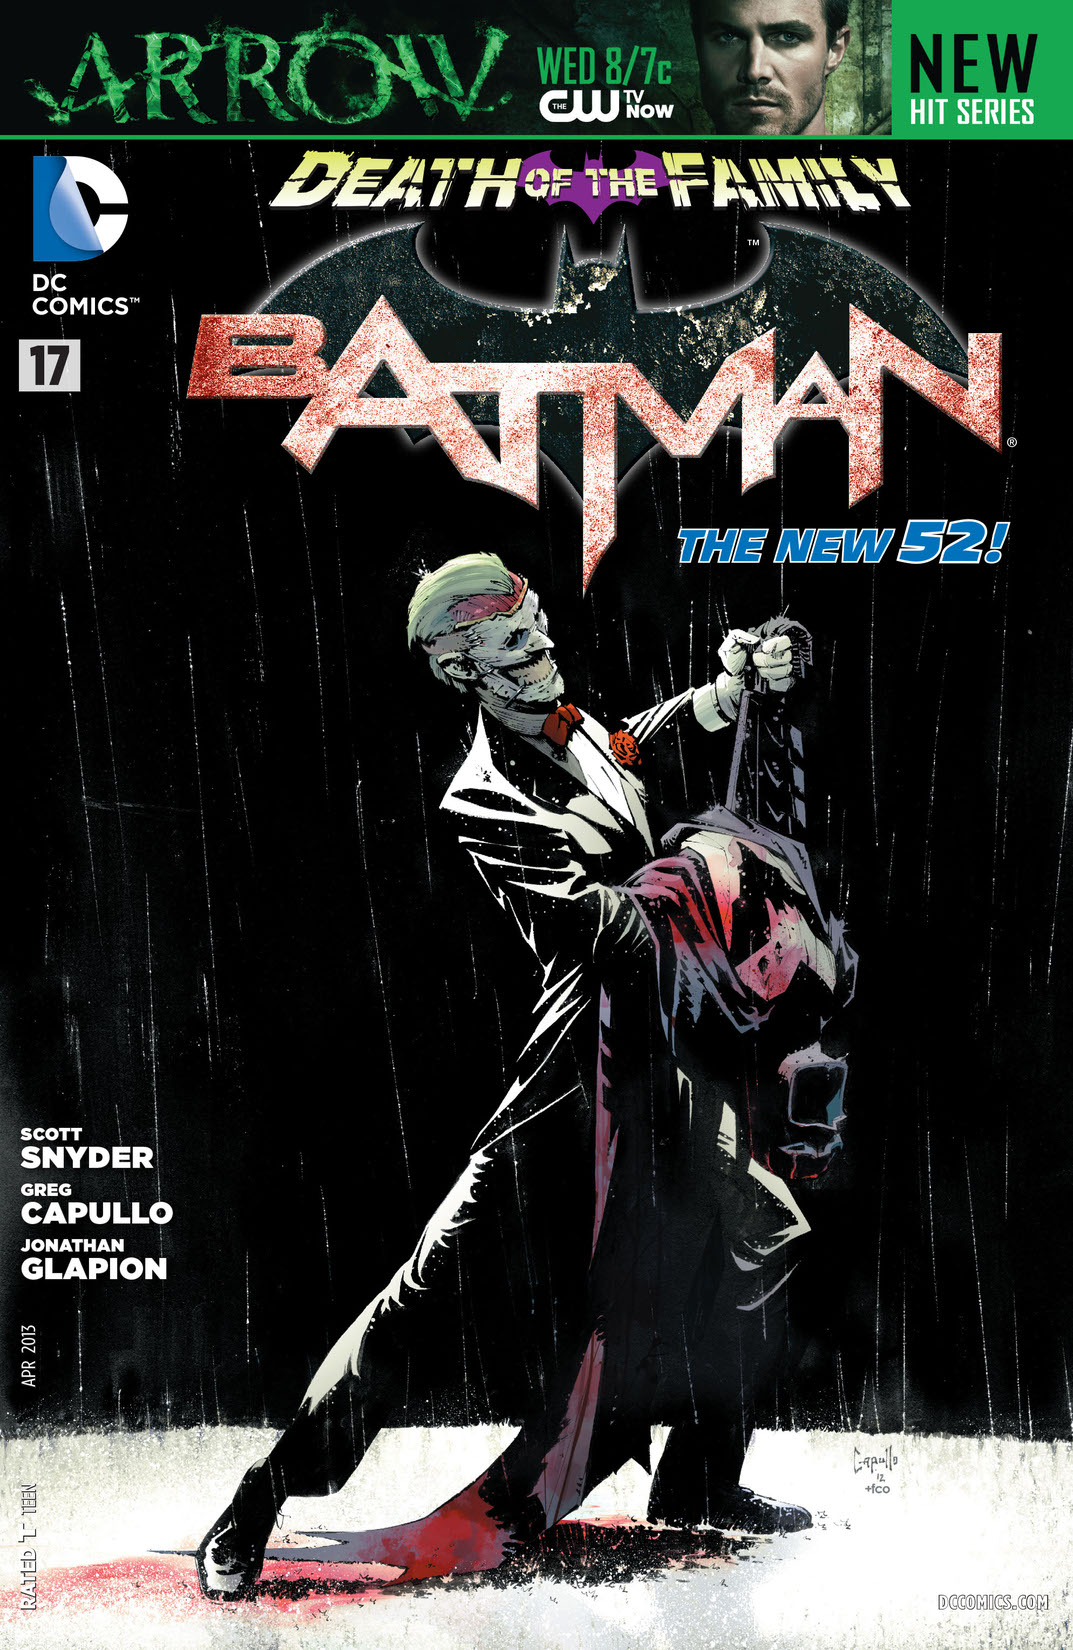 Batman (2011-) #17 preview images